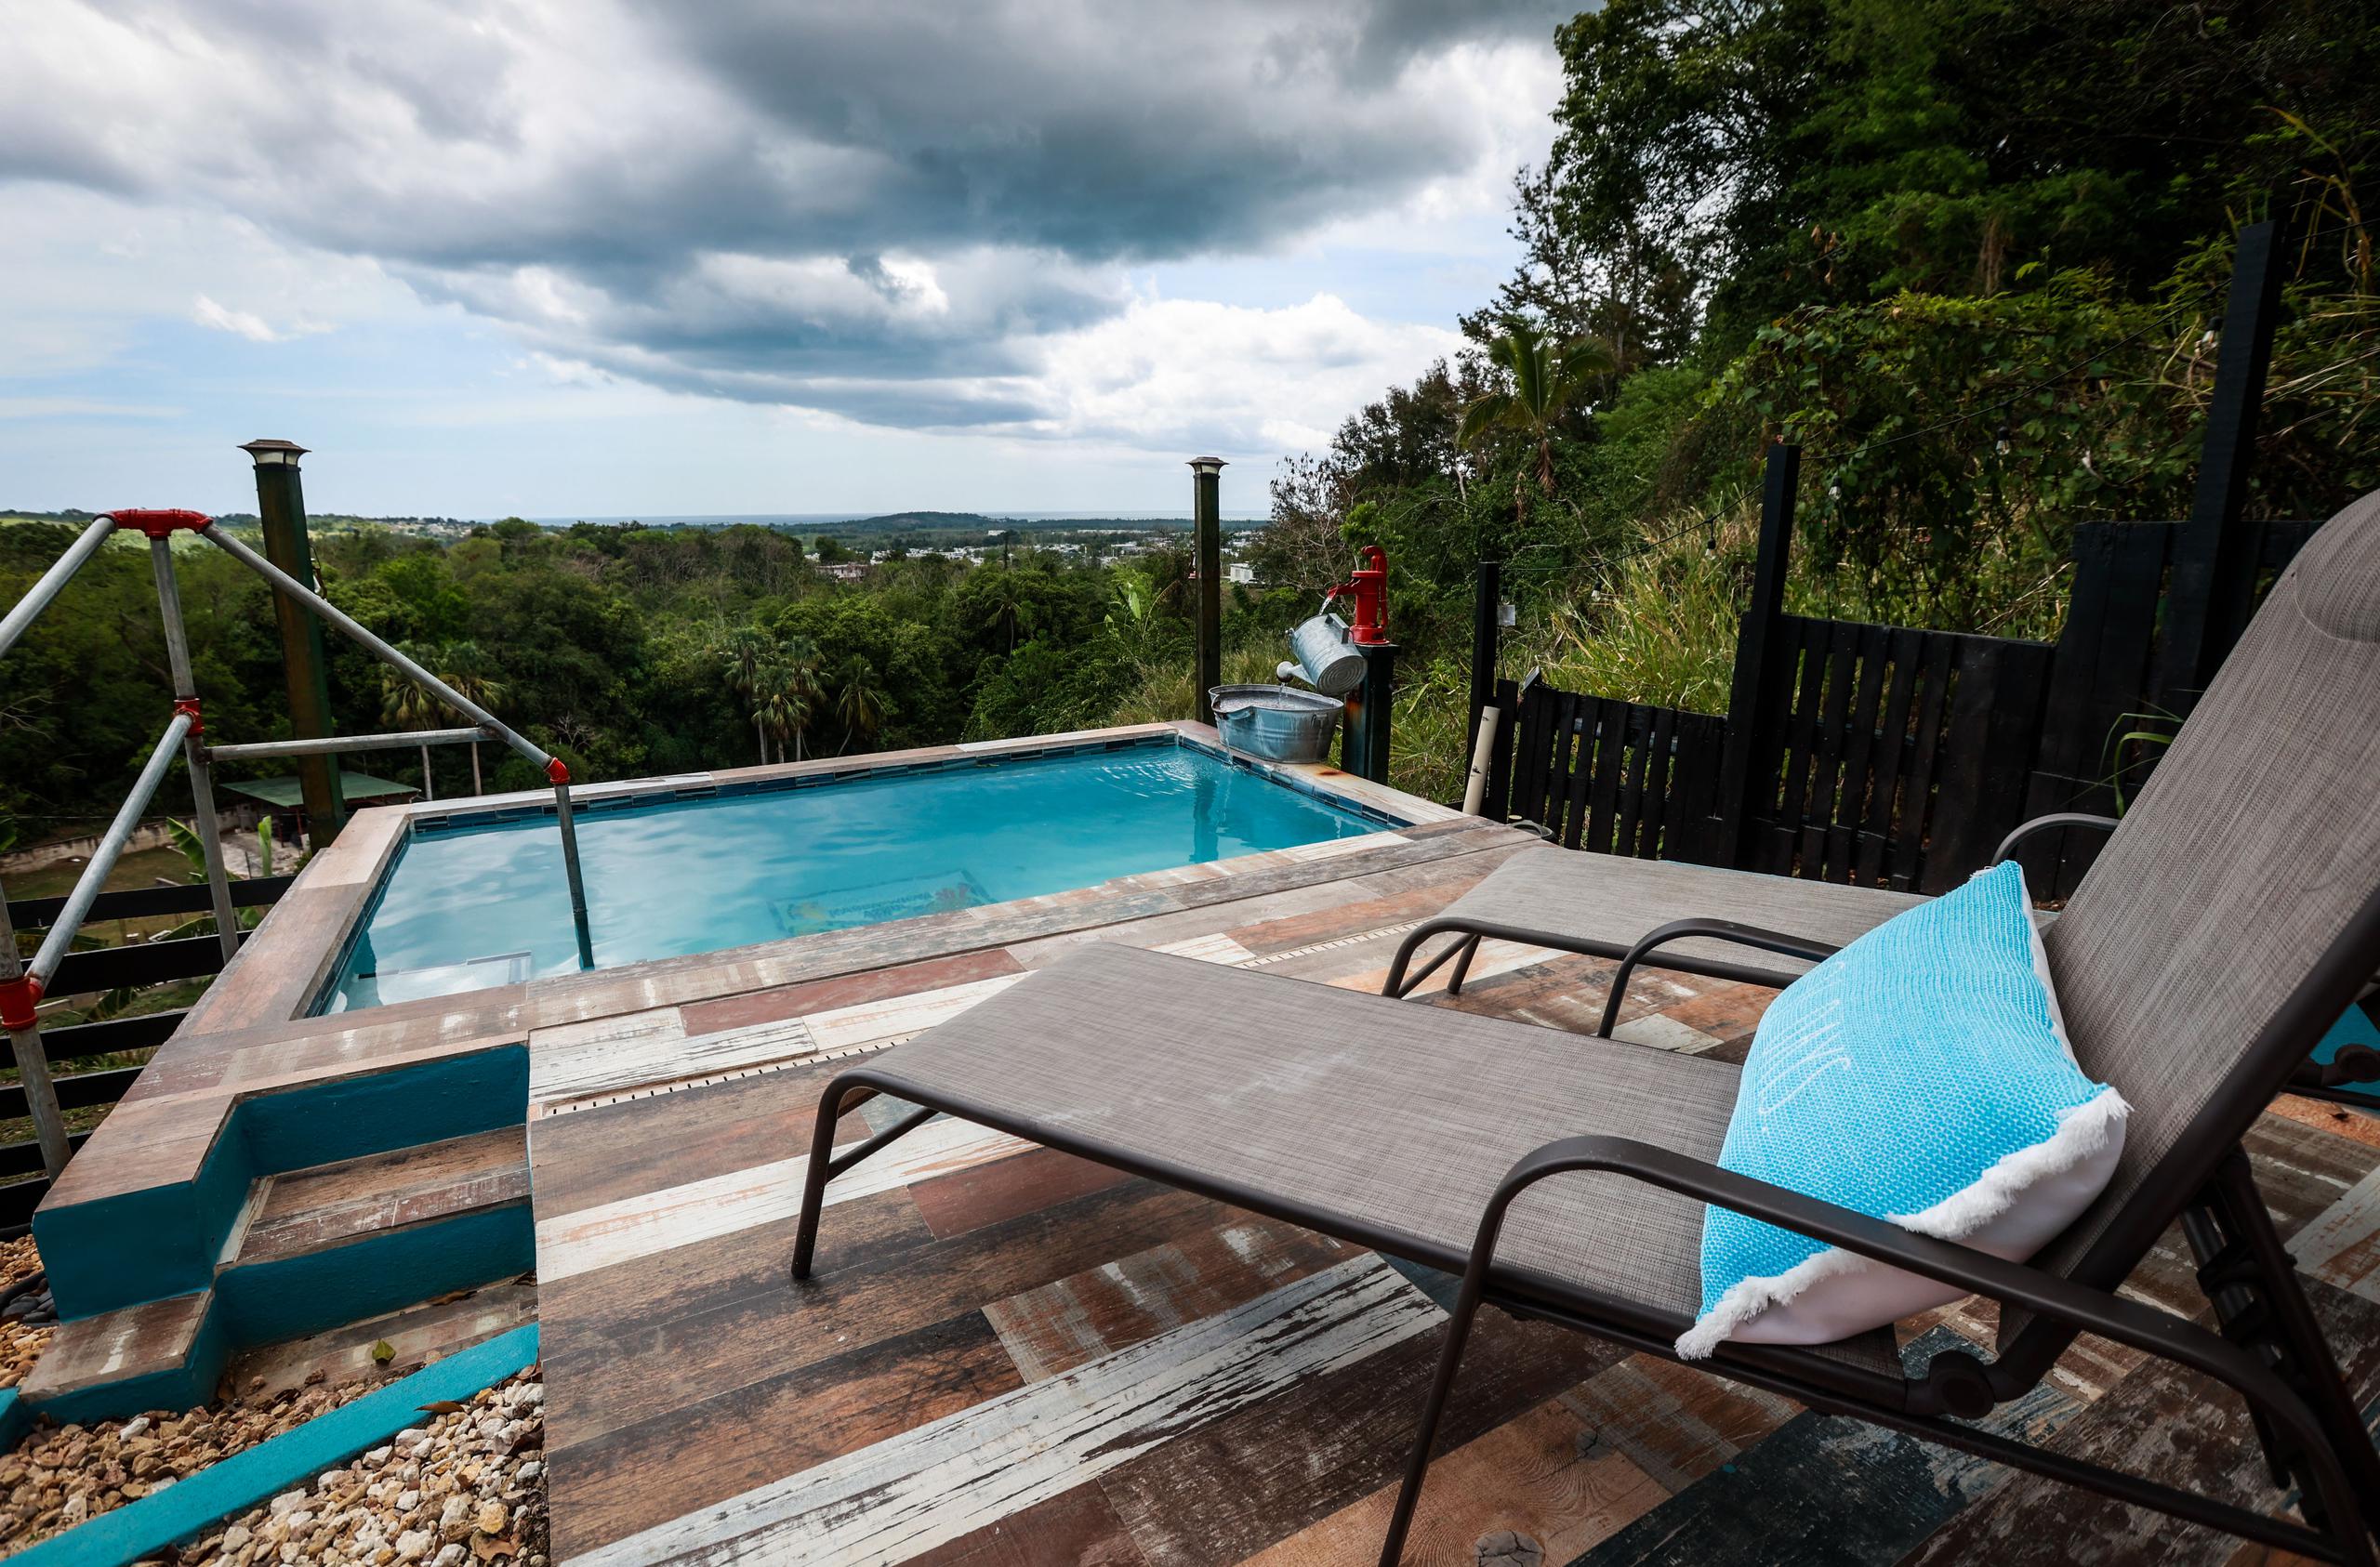 Entre otras comodidades, el lugar cuenta con terraza y piscina con una vista espectacular.